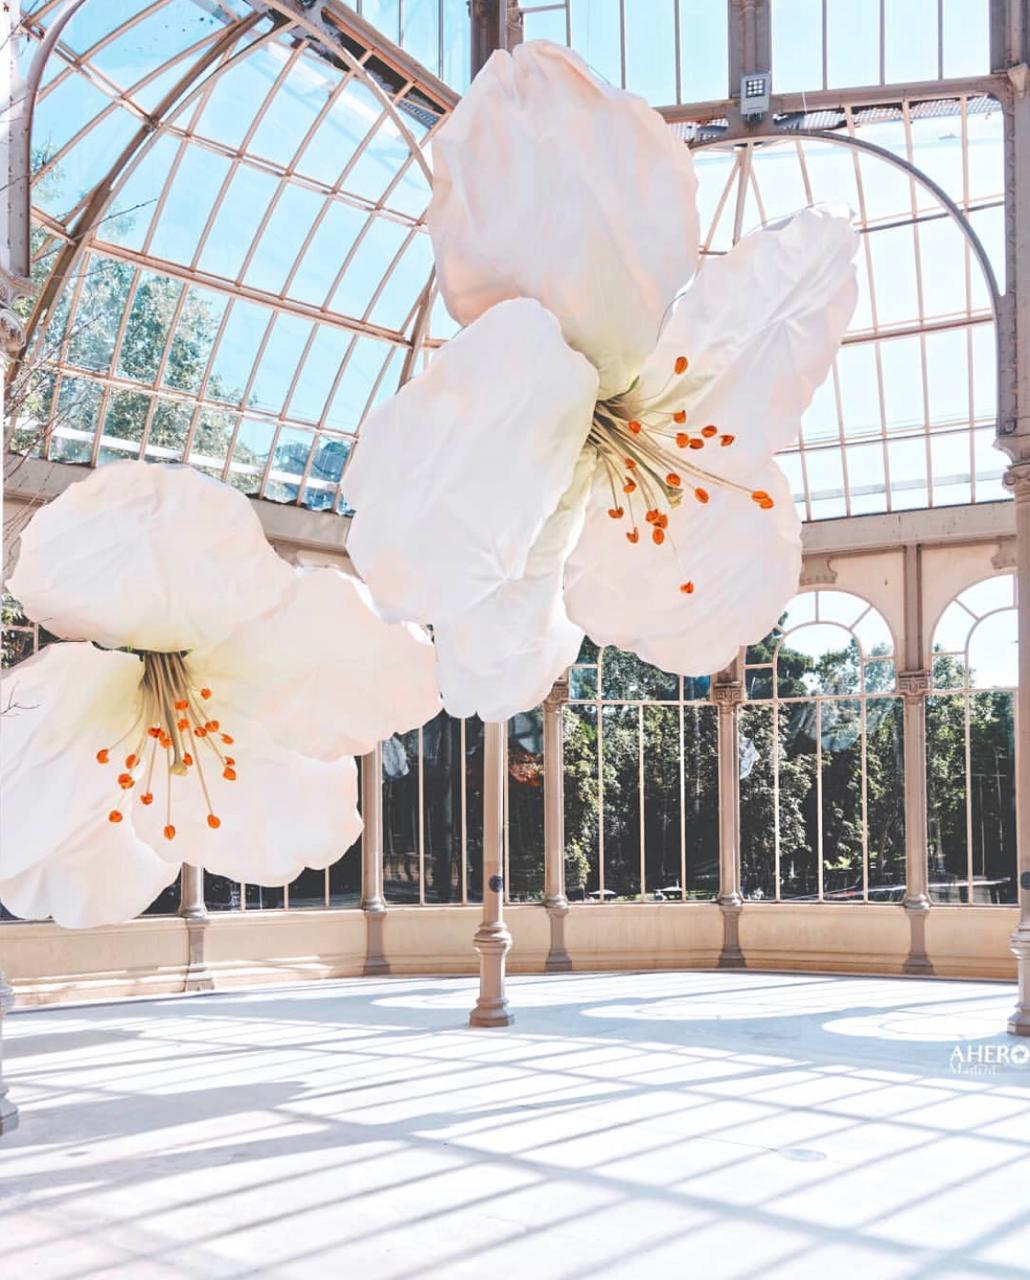 Artista cria instalação com flores gigantes em Madrid